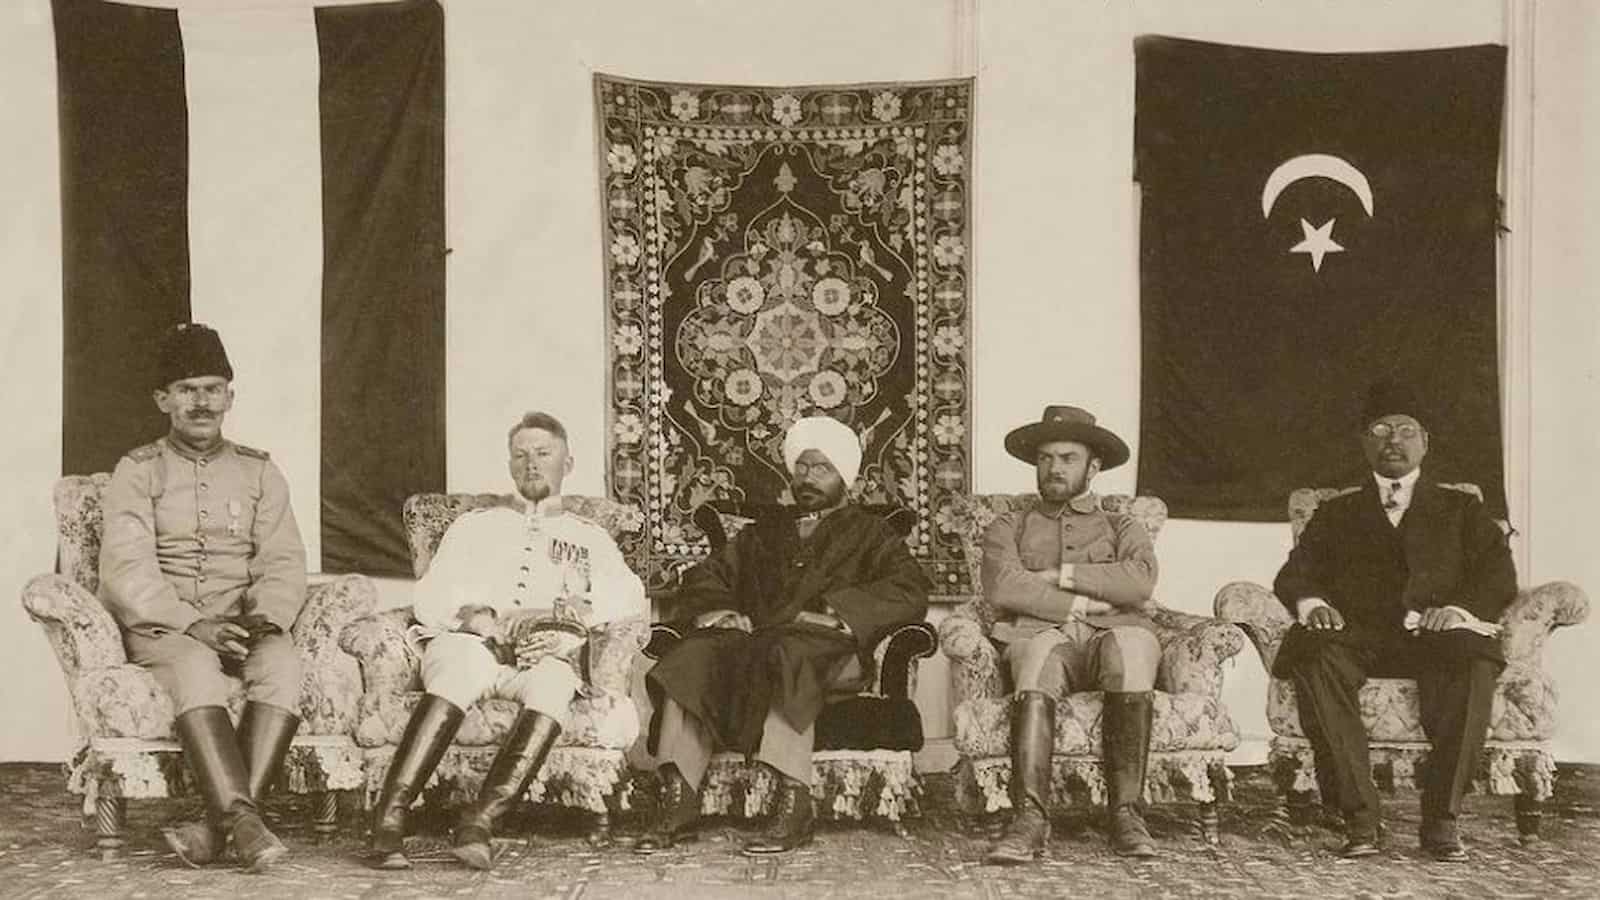 Raja mahendra Pratap and barkatullah bhopali in Kabul 1915